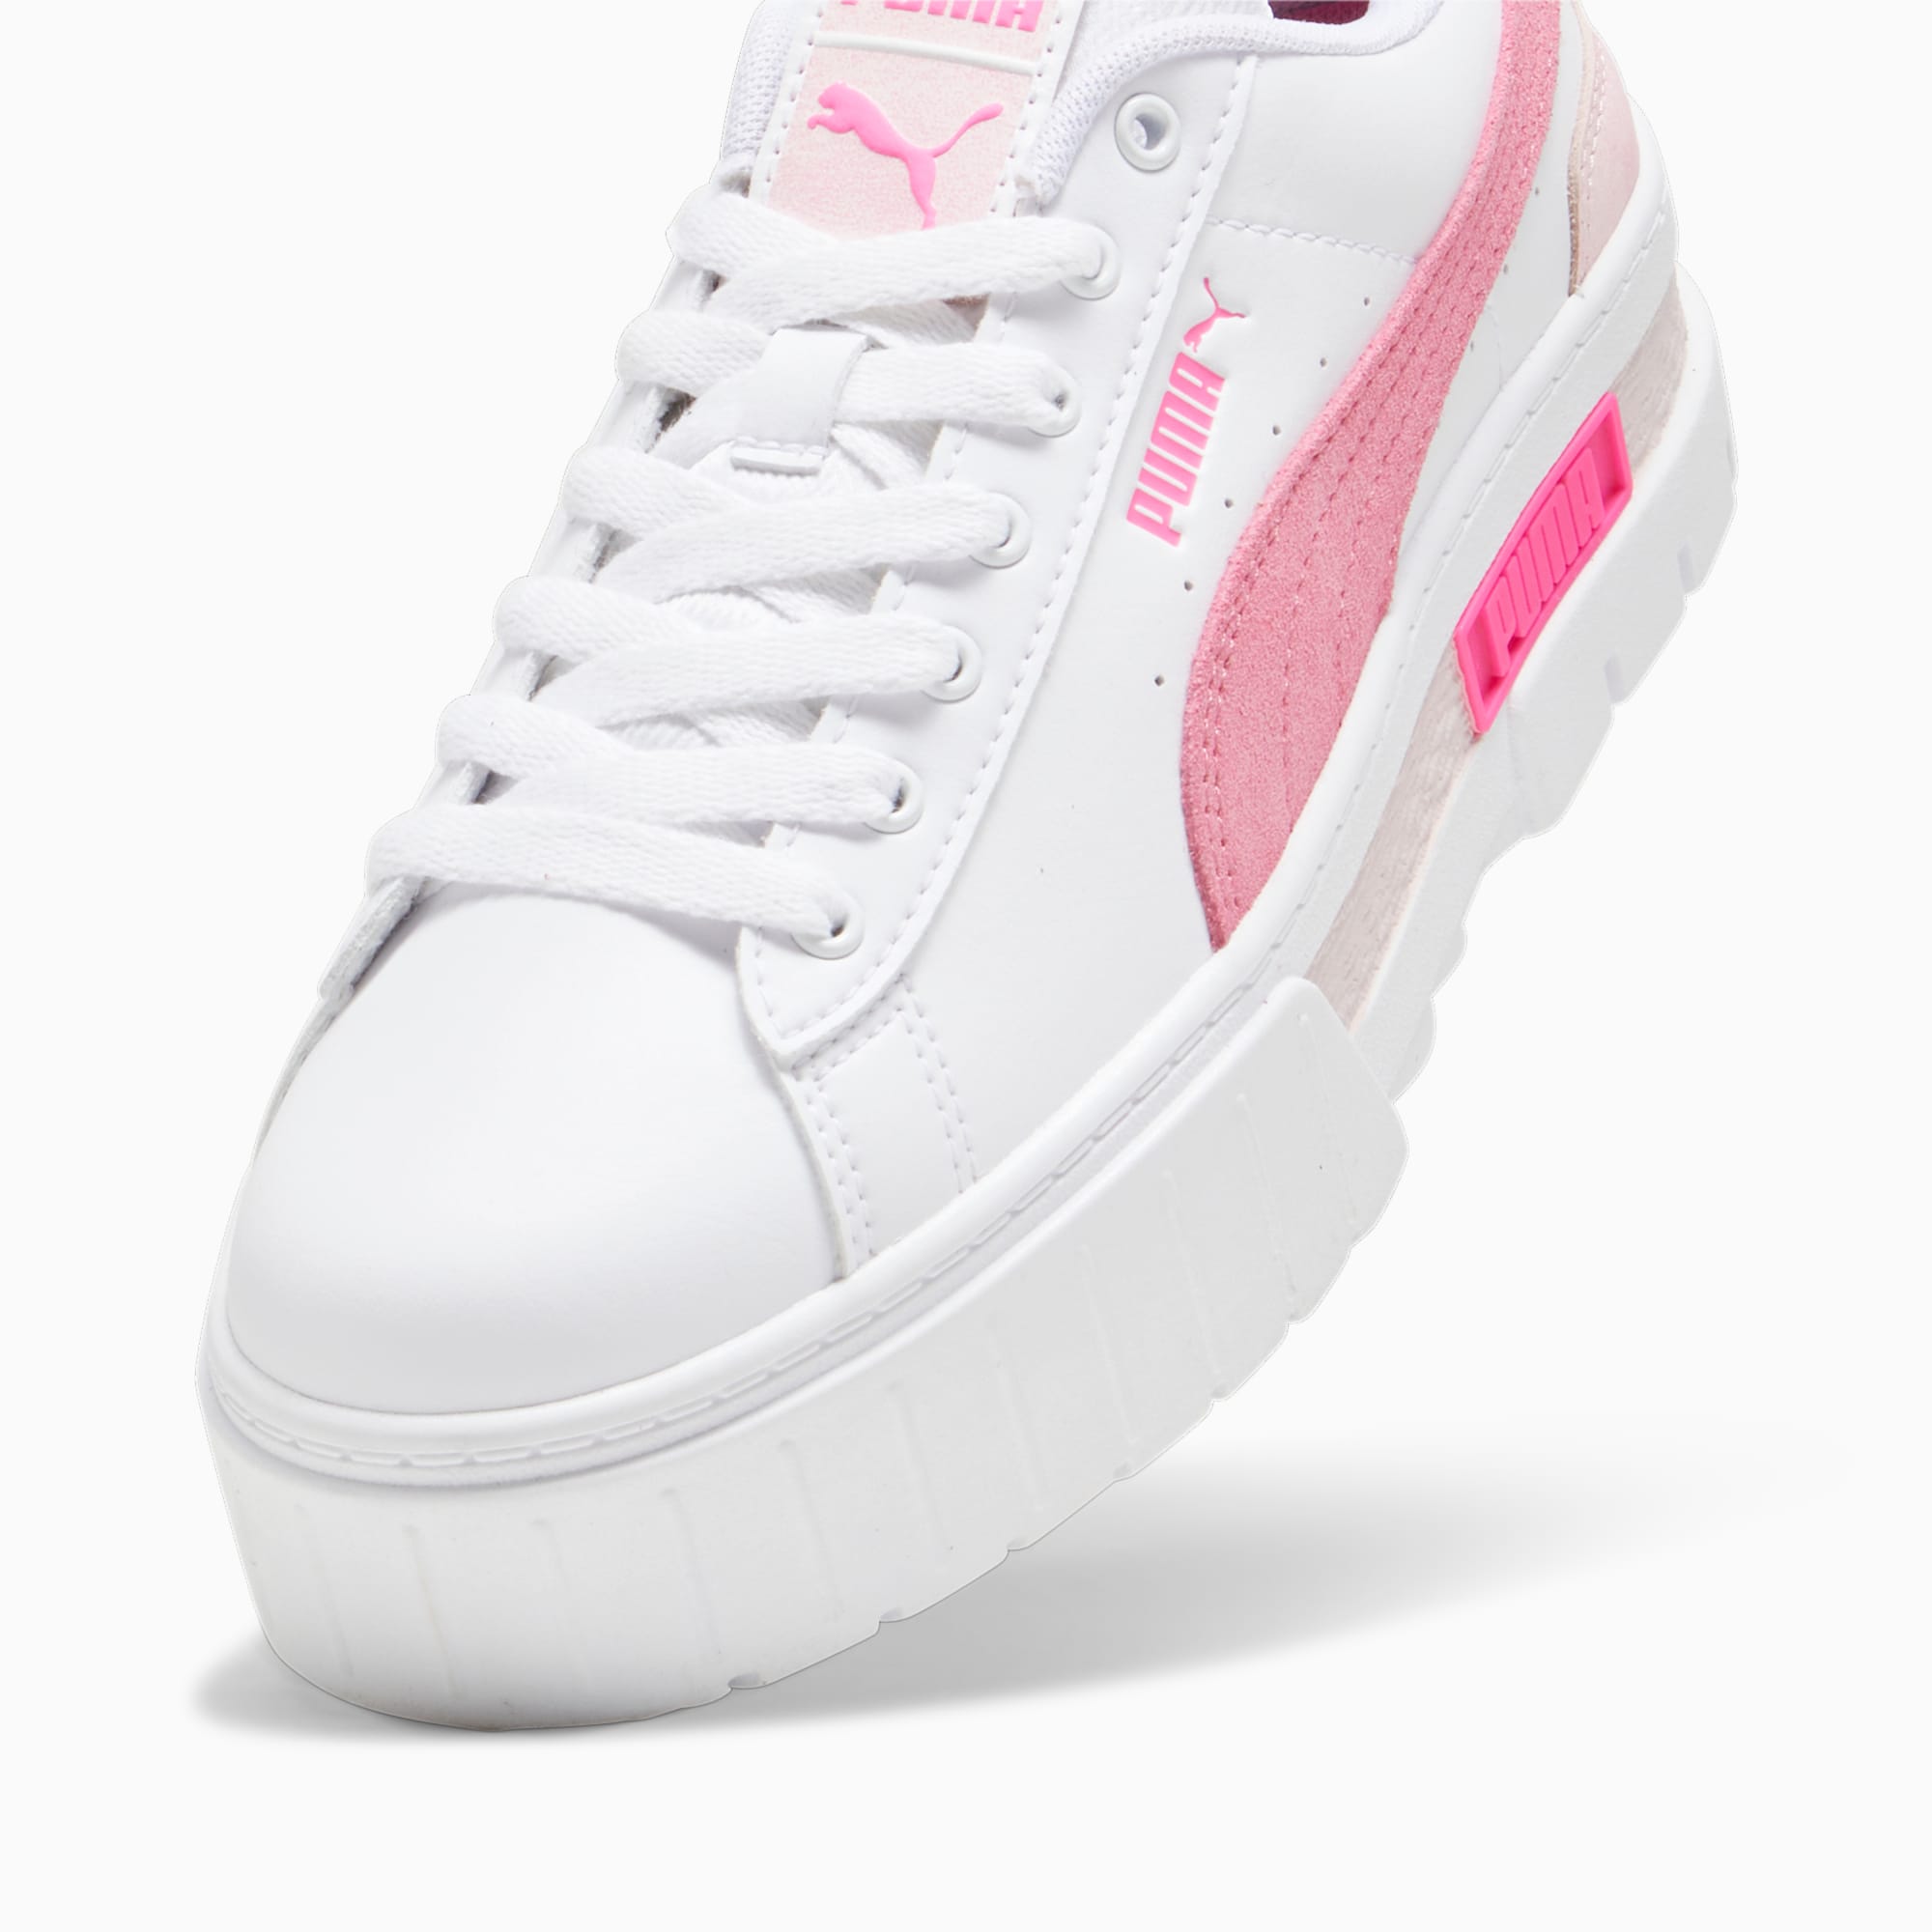 PUMA Mayze Ow Sneakers Women, White/Strawberry Burst/Ravish, Size 35,5, Shoes